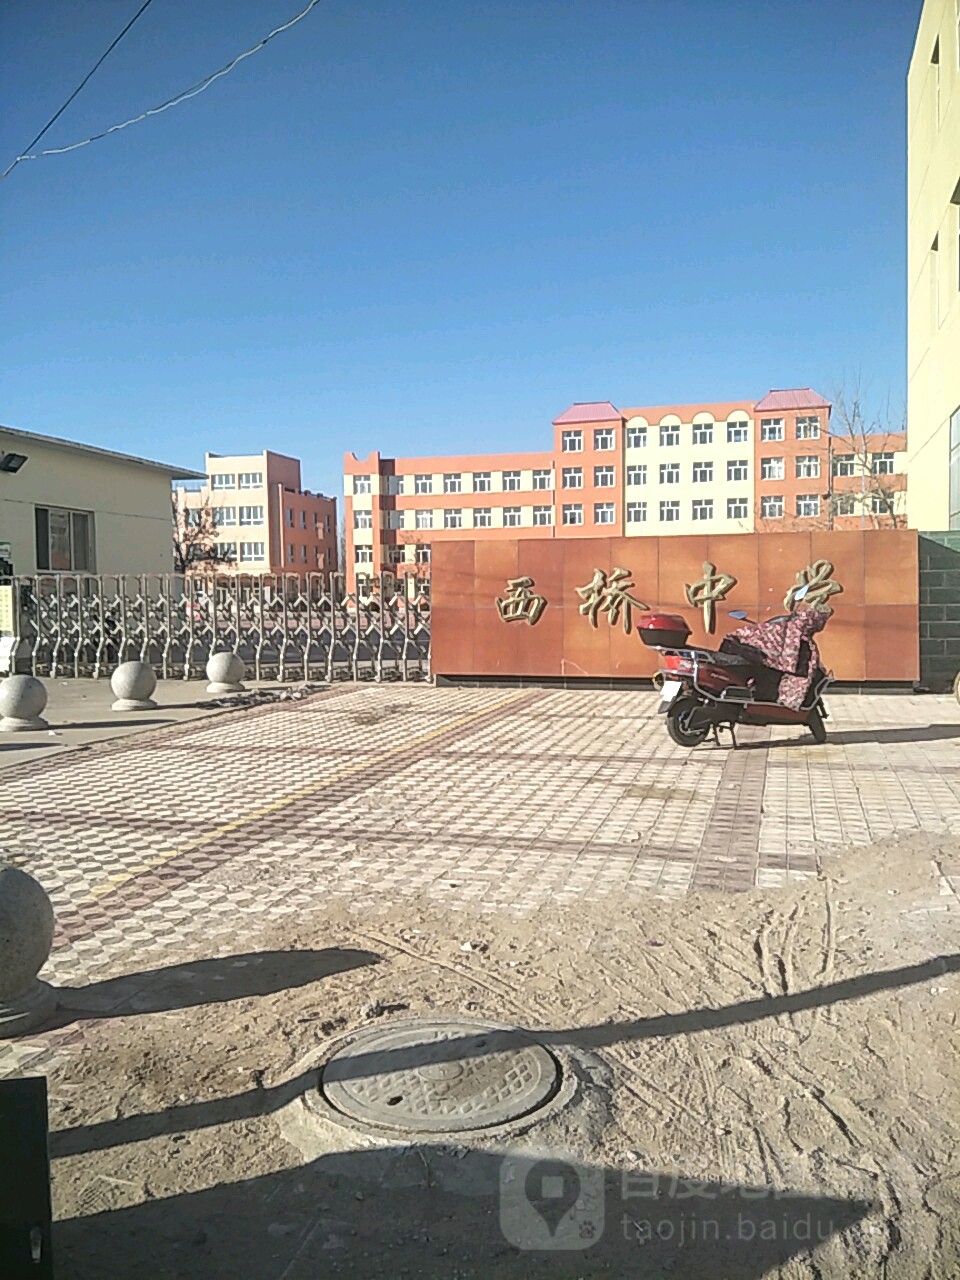 内蒙古自治区赤峰市喀喇沁旗西桥中学(平锦线北)